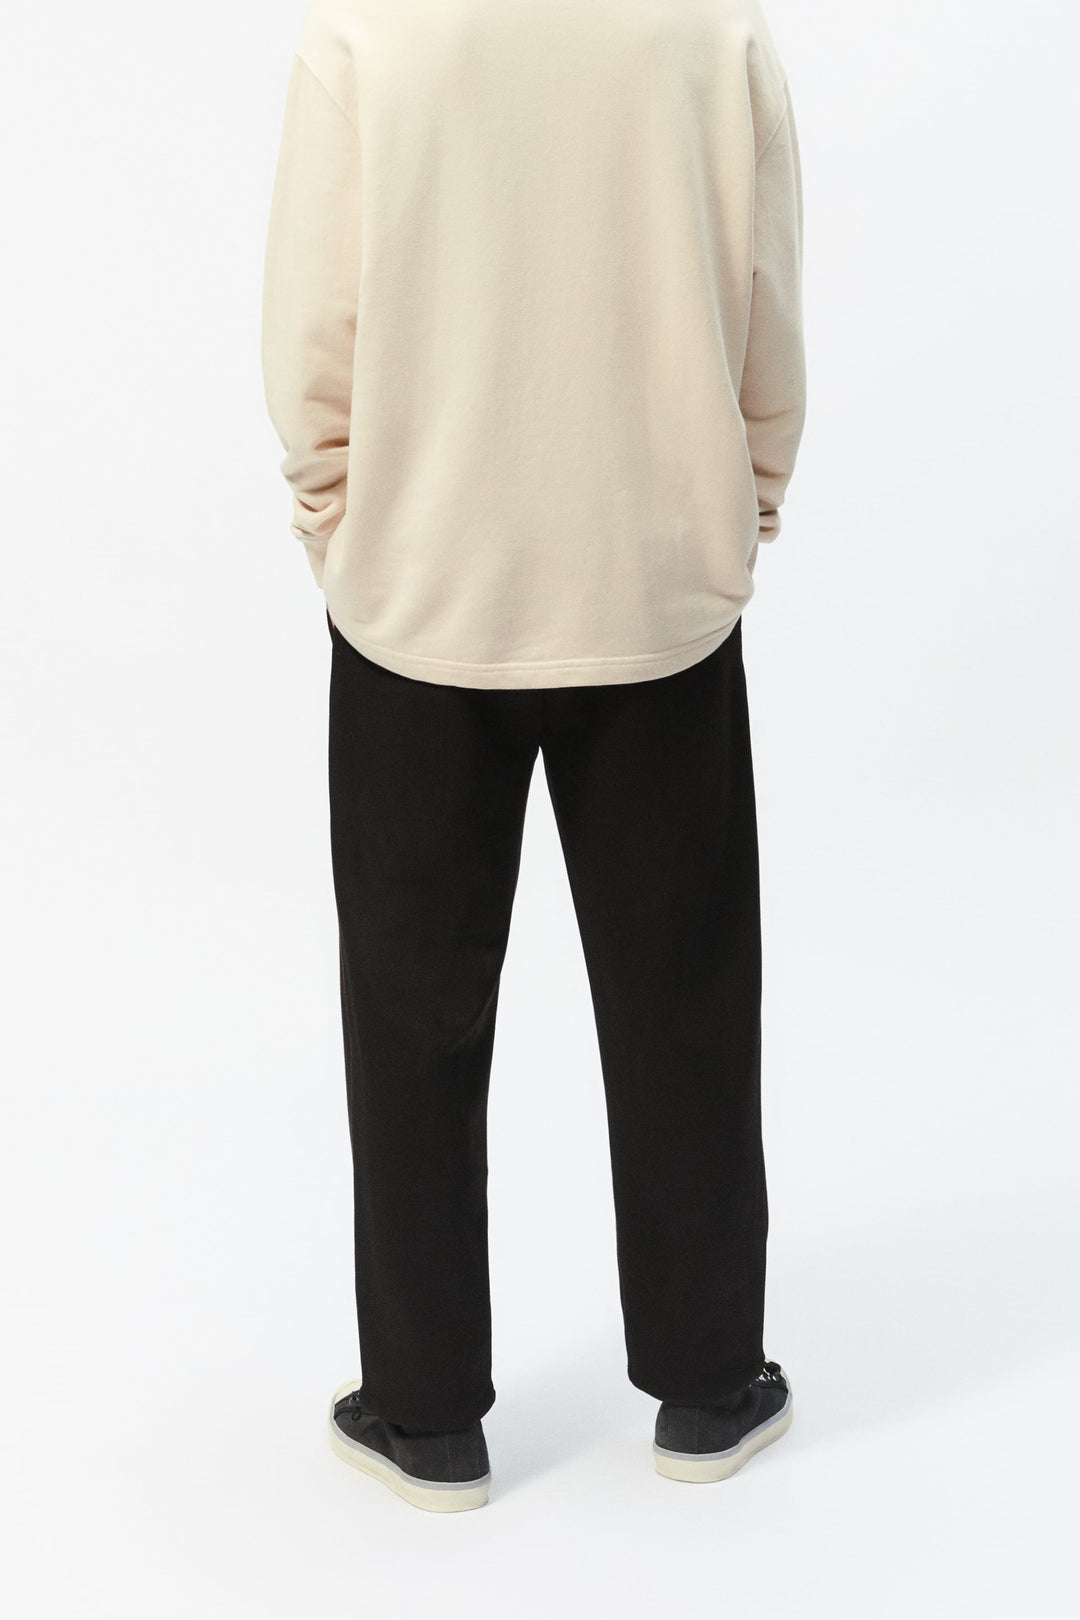 ZaraMan Knitted Jogg Polyester Velvet Trouser 8281/315/800